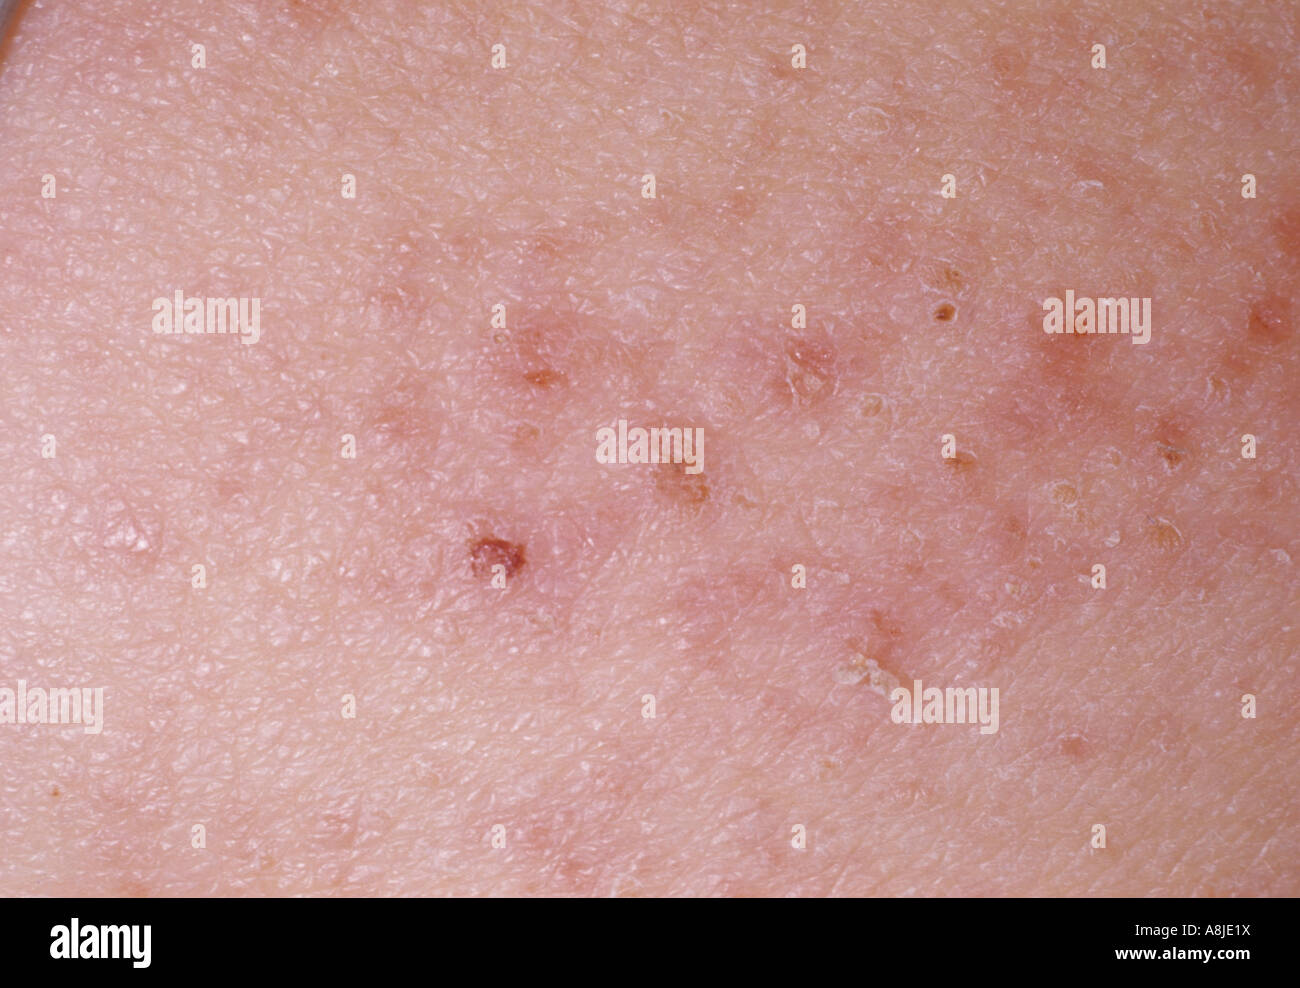 Vista ravvicinata di eczema infantile su un giovane bambino indietro. Noto anche come dermatite atopica. Foto Stock